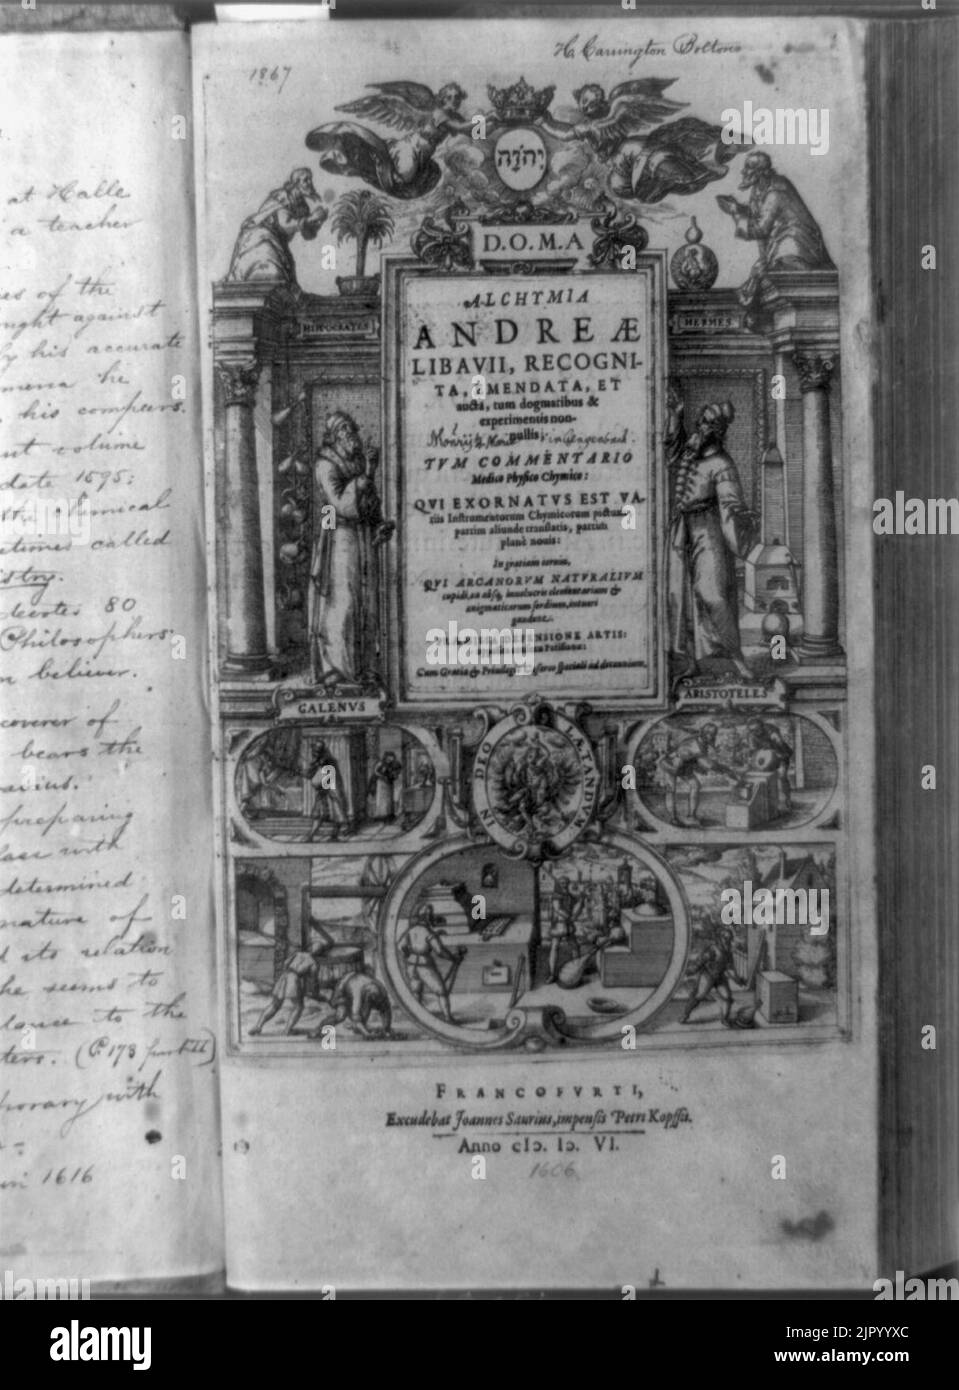 Titolo pagina di Alchymia, con figure di Galeno e Aristotele, e le scene di alchimia Foto Stock